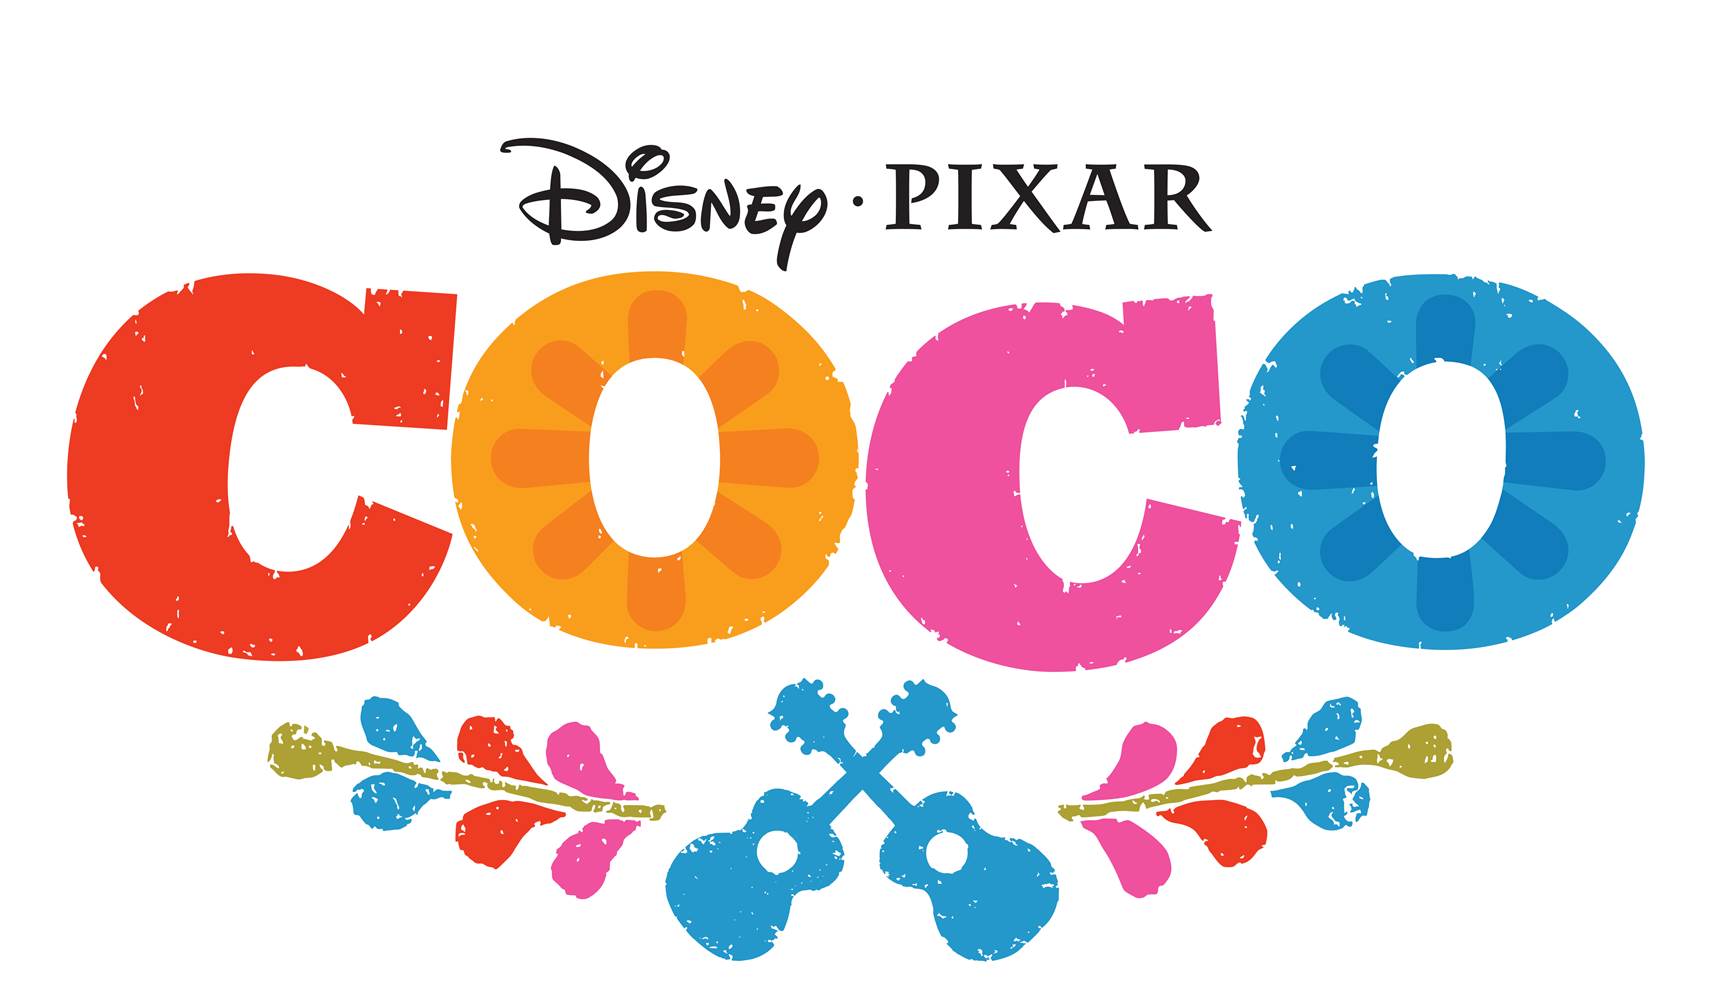 Coco Pixar Movie Logo